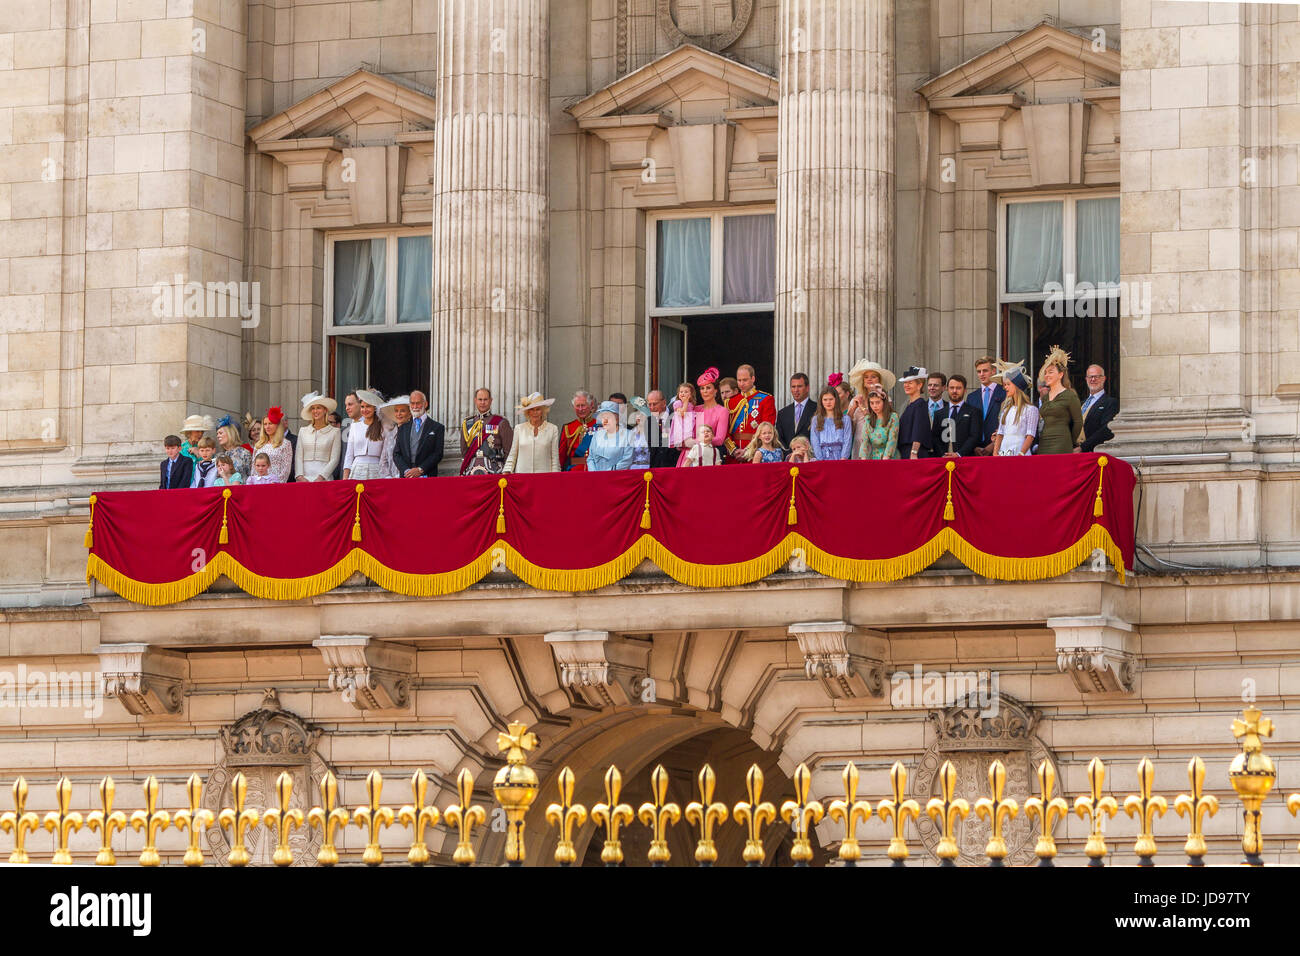 Die Königin und Mitglieder der königlichen Familie versammeln sich auf dem Balkon des Buckingham Palace nach der Trooping the Color Parade, London, Großbritannien, 2017 Stockfoto